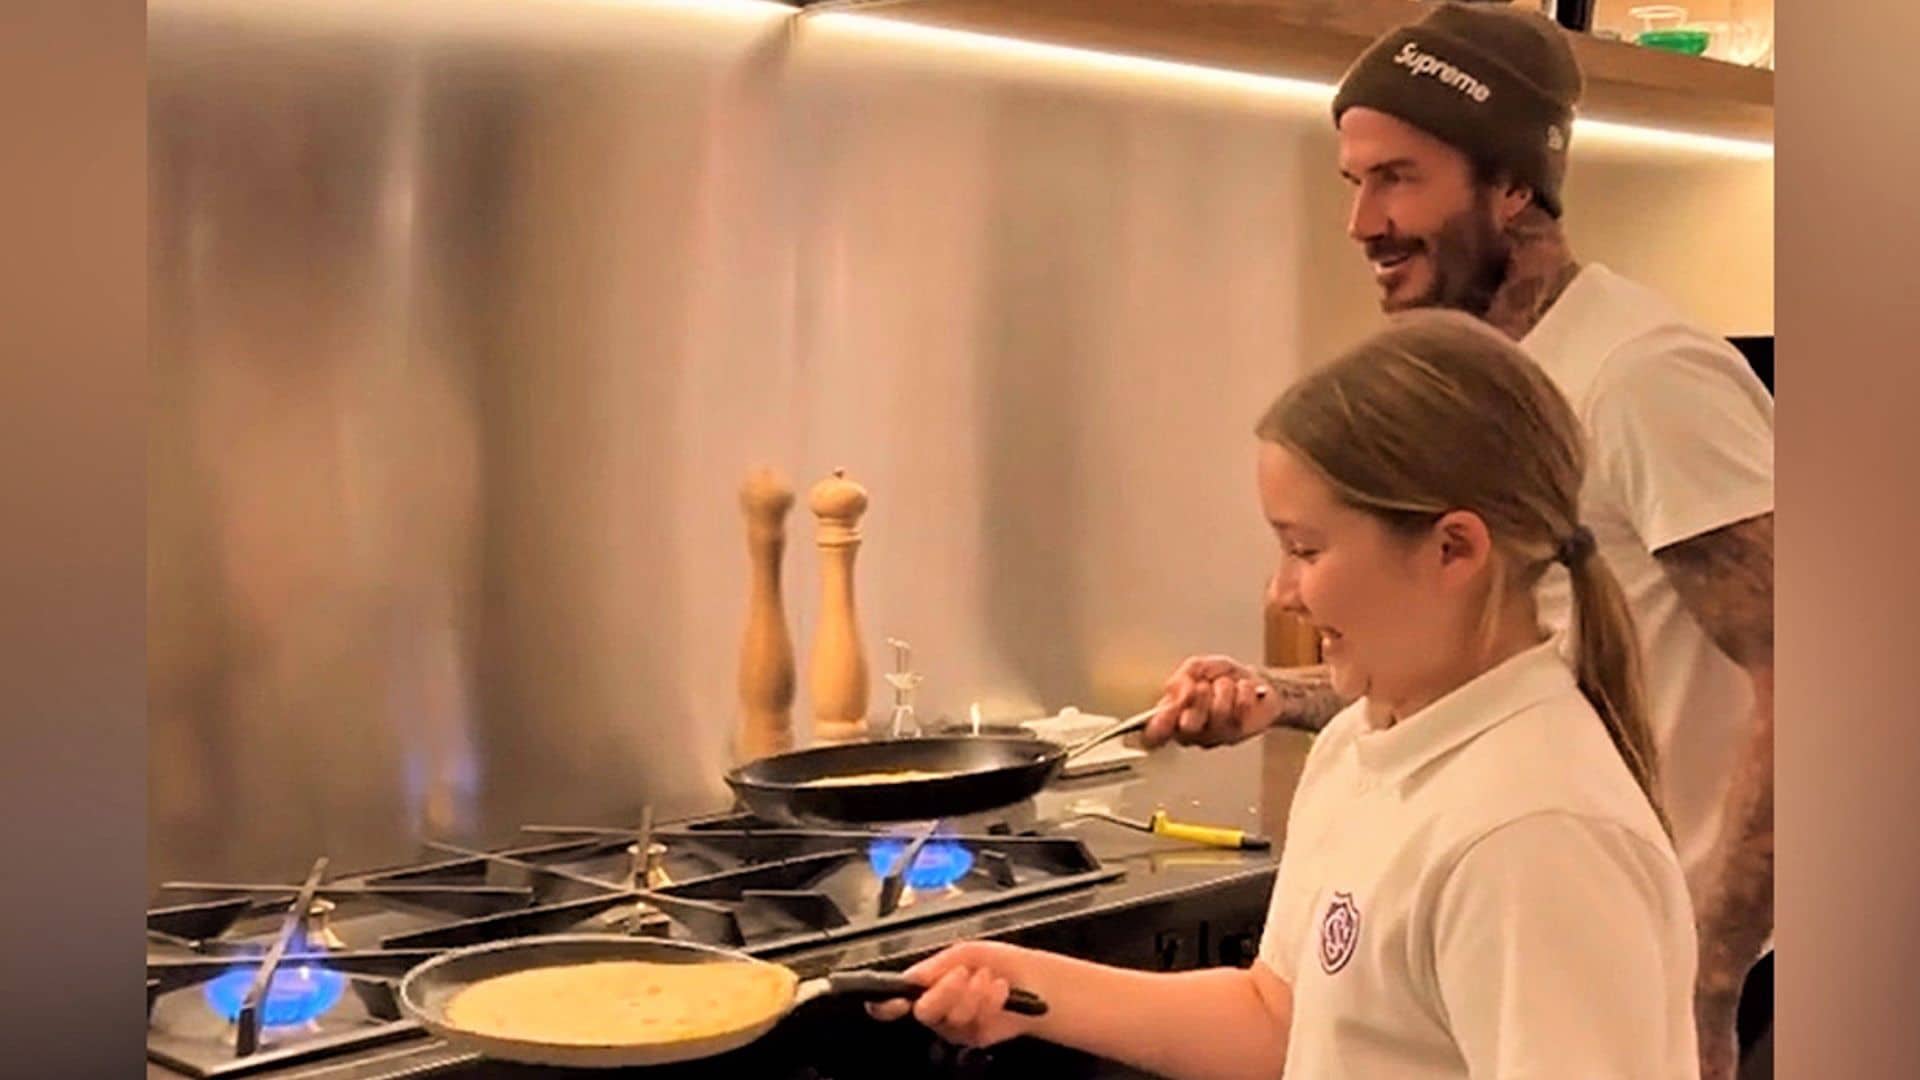 ¡Duelo de chefs! El vídeo más divertido de David Beckham y su hija Harper retándose en la cocina